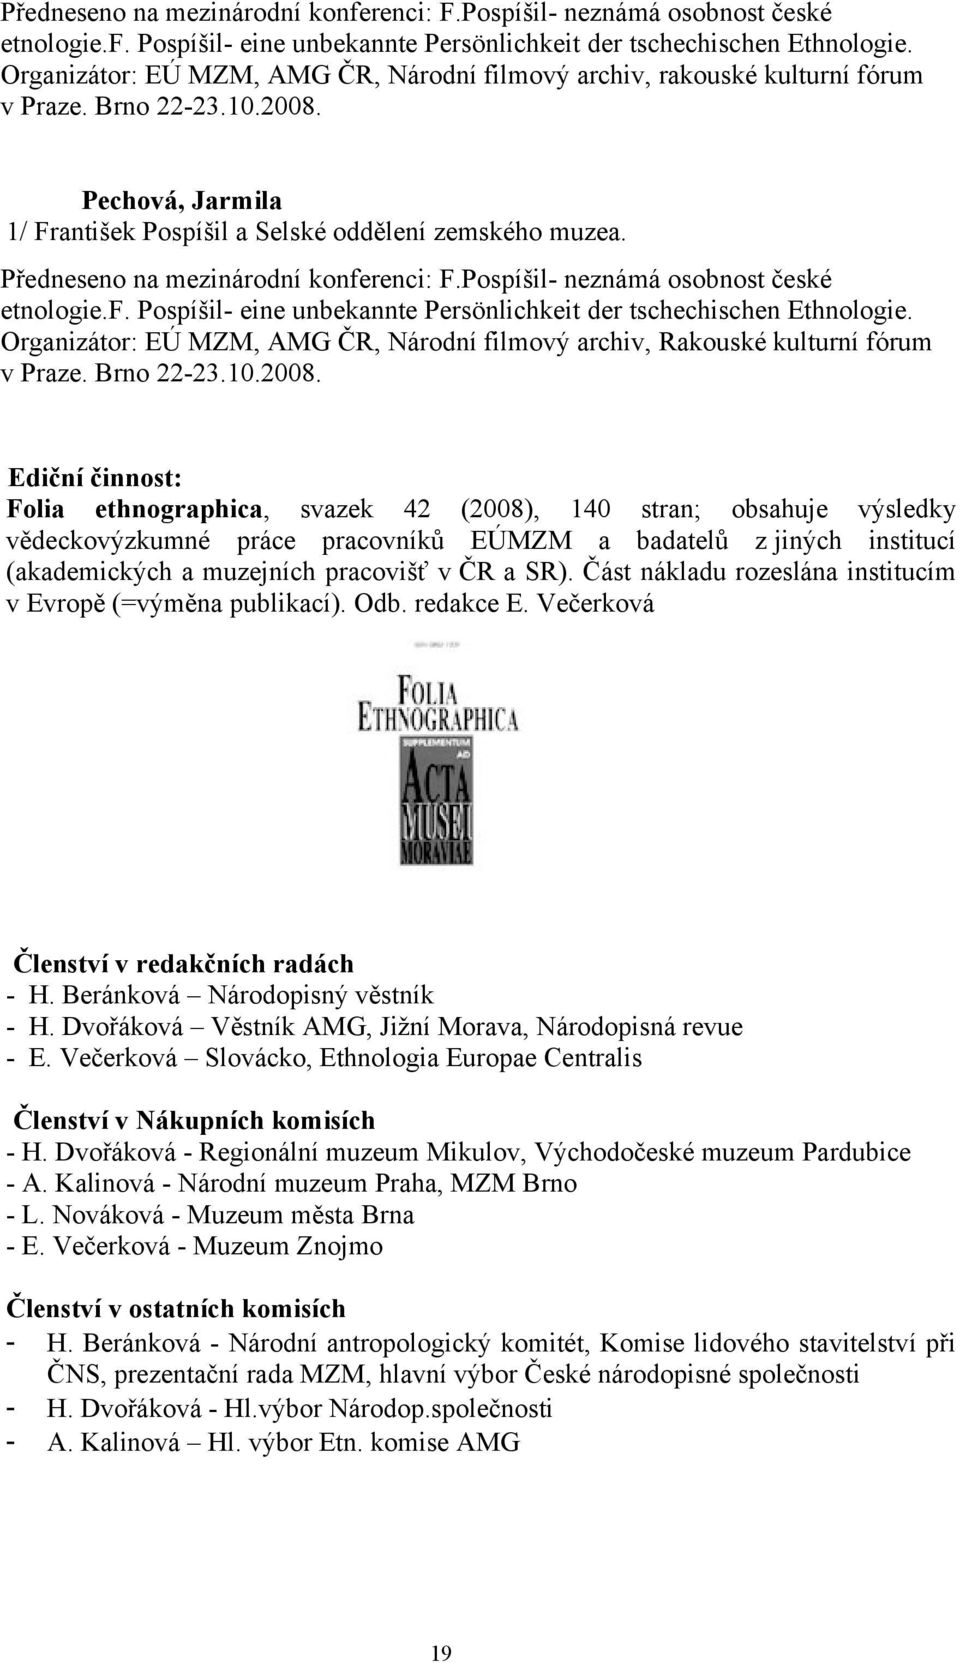 Organizátor: EÚ MZM, AMG ČR, Národní filmový archiv, Rakouské kulturní fórum v Praze. Brno 22-23.10.2008.